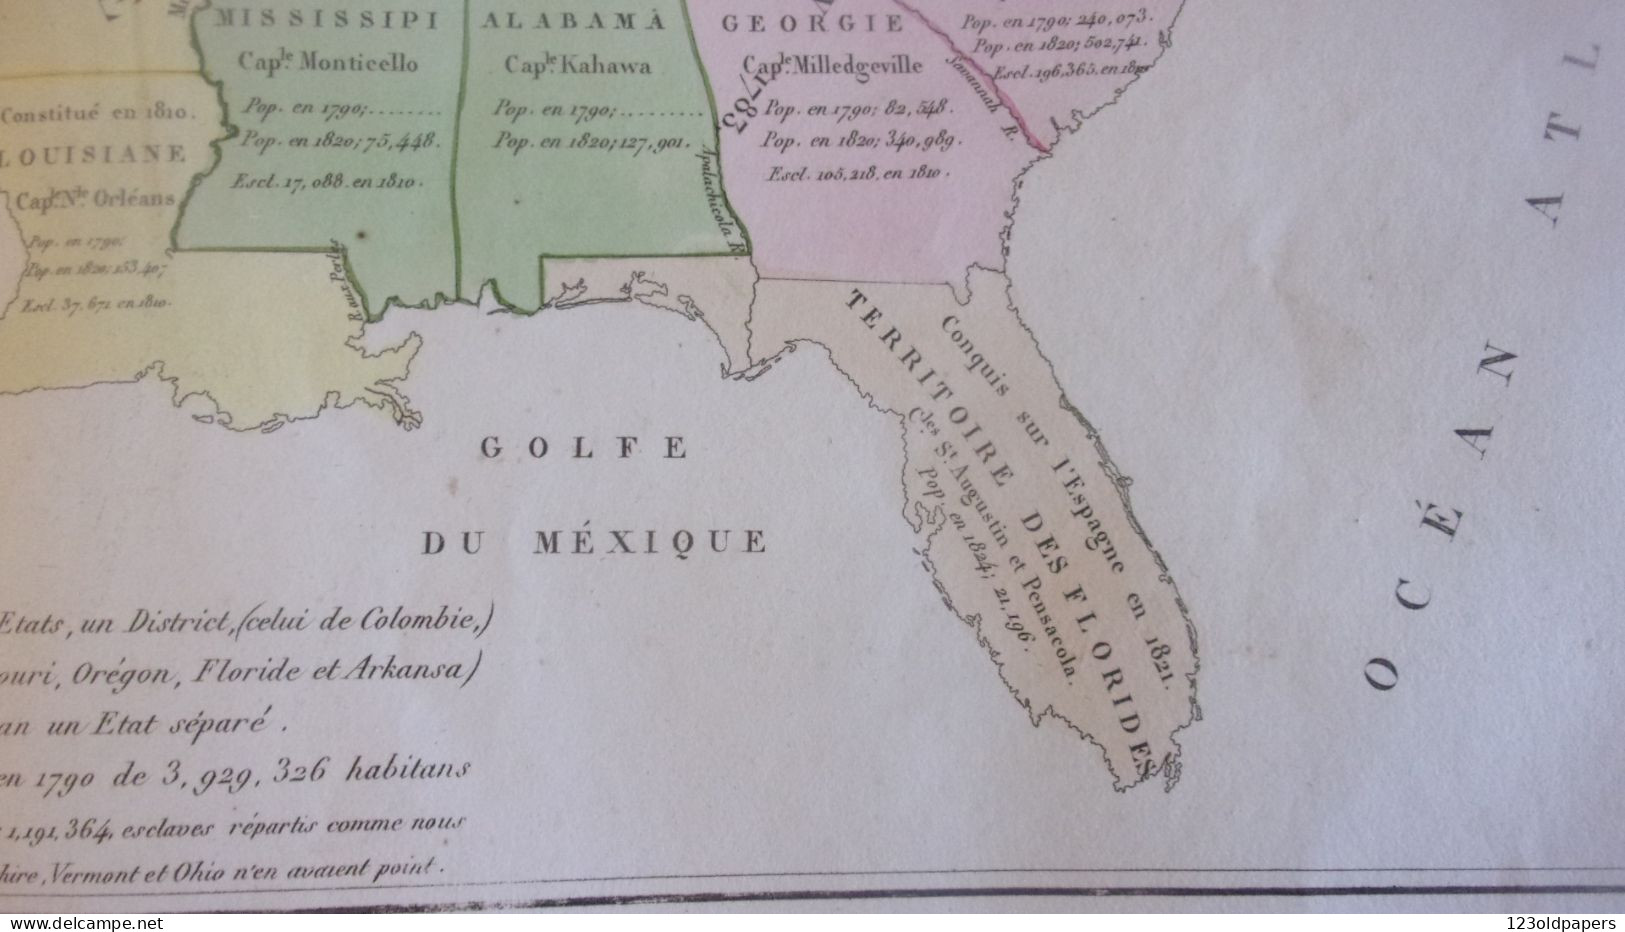 1825 Antique Maps United States BY JEAN ALEXANDRE BUCHON 15 X 25 Inches ADJONCTION PROGRESSIVE DES ETATS LOUISIANE FLORI - Cartes Géographiques